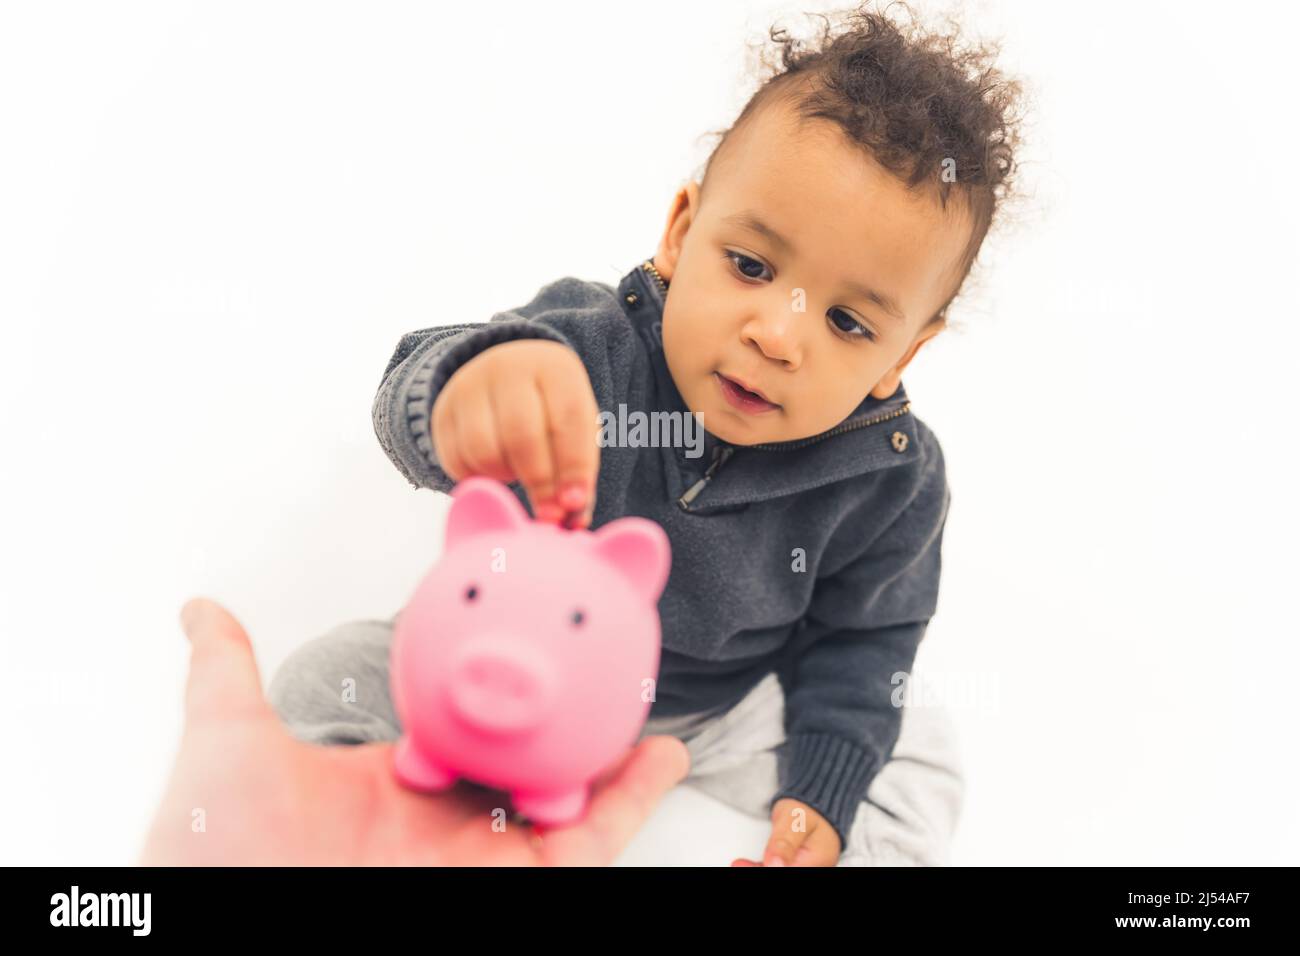 Alegre niño poniendo moneda en el banco piggy. Fotografías de alta calidad Foto de stock